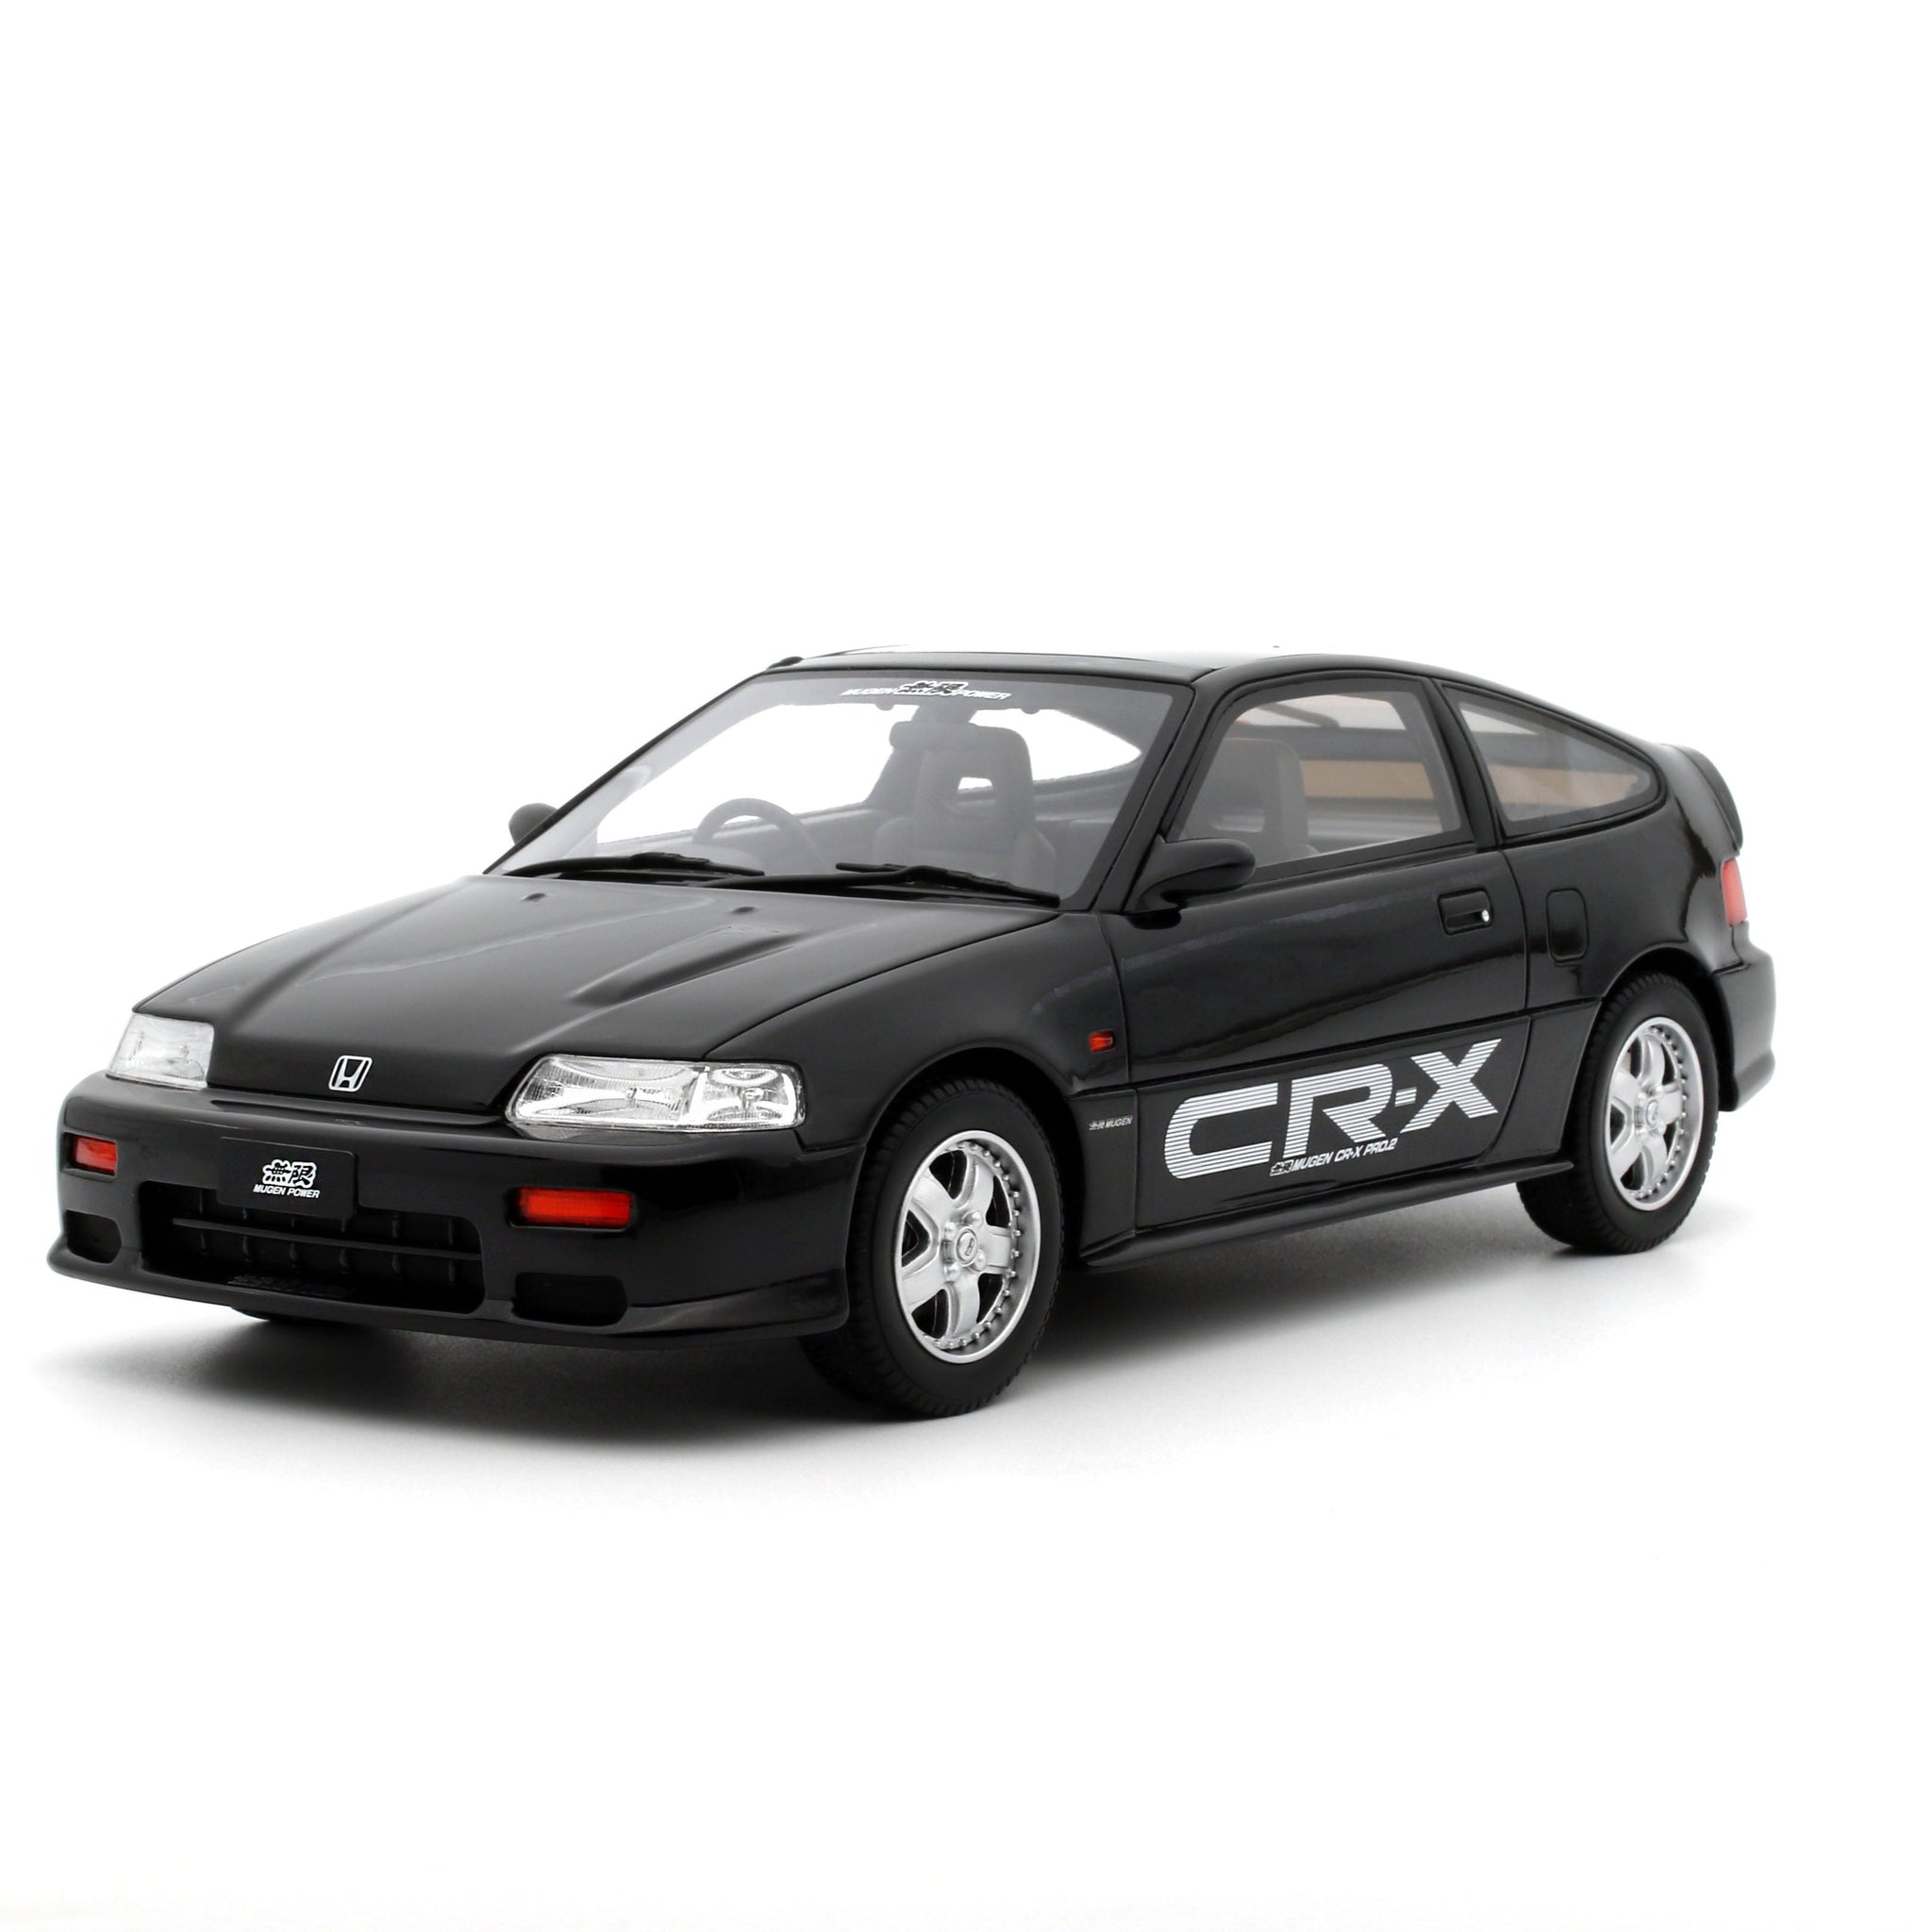 Honda CR-X Pro.2 Mugen 1989 Black